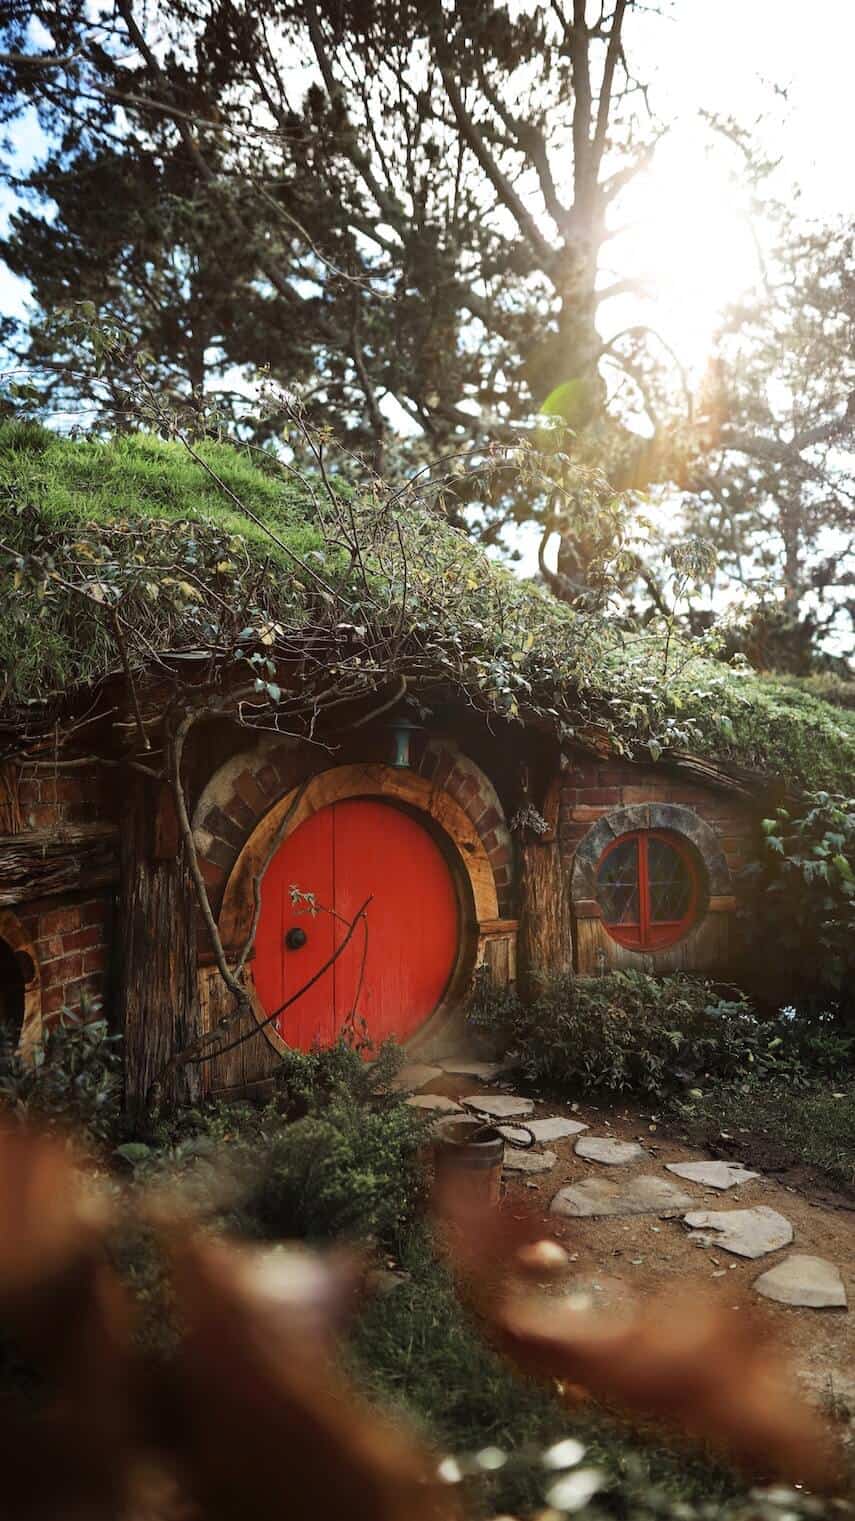 Round Red Door of a Hobbit House